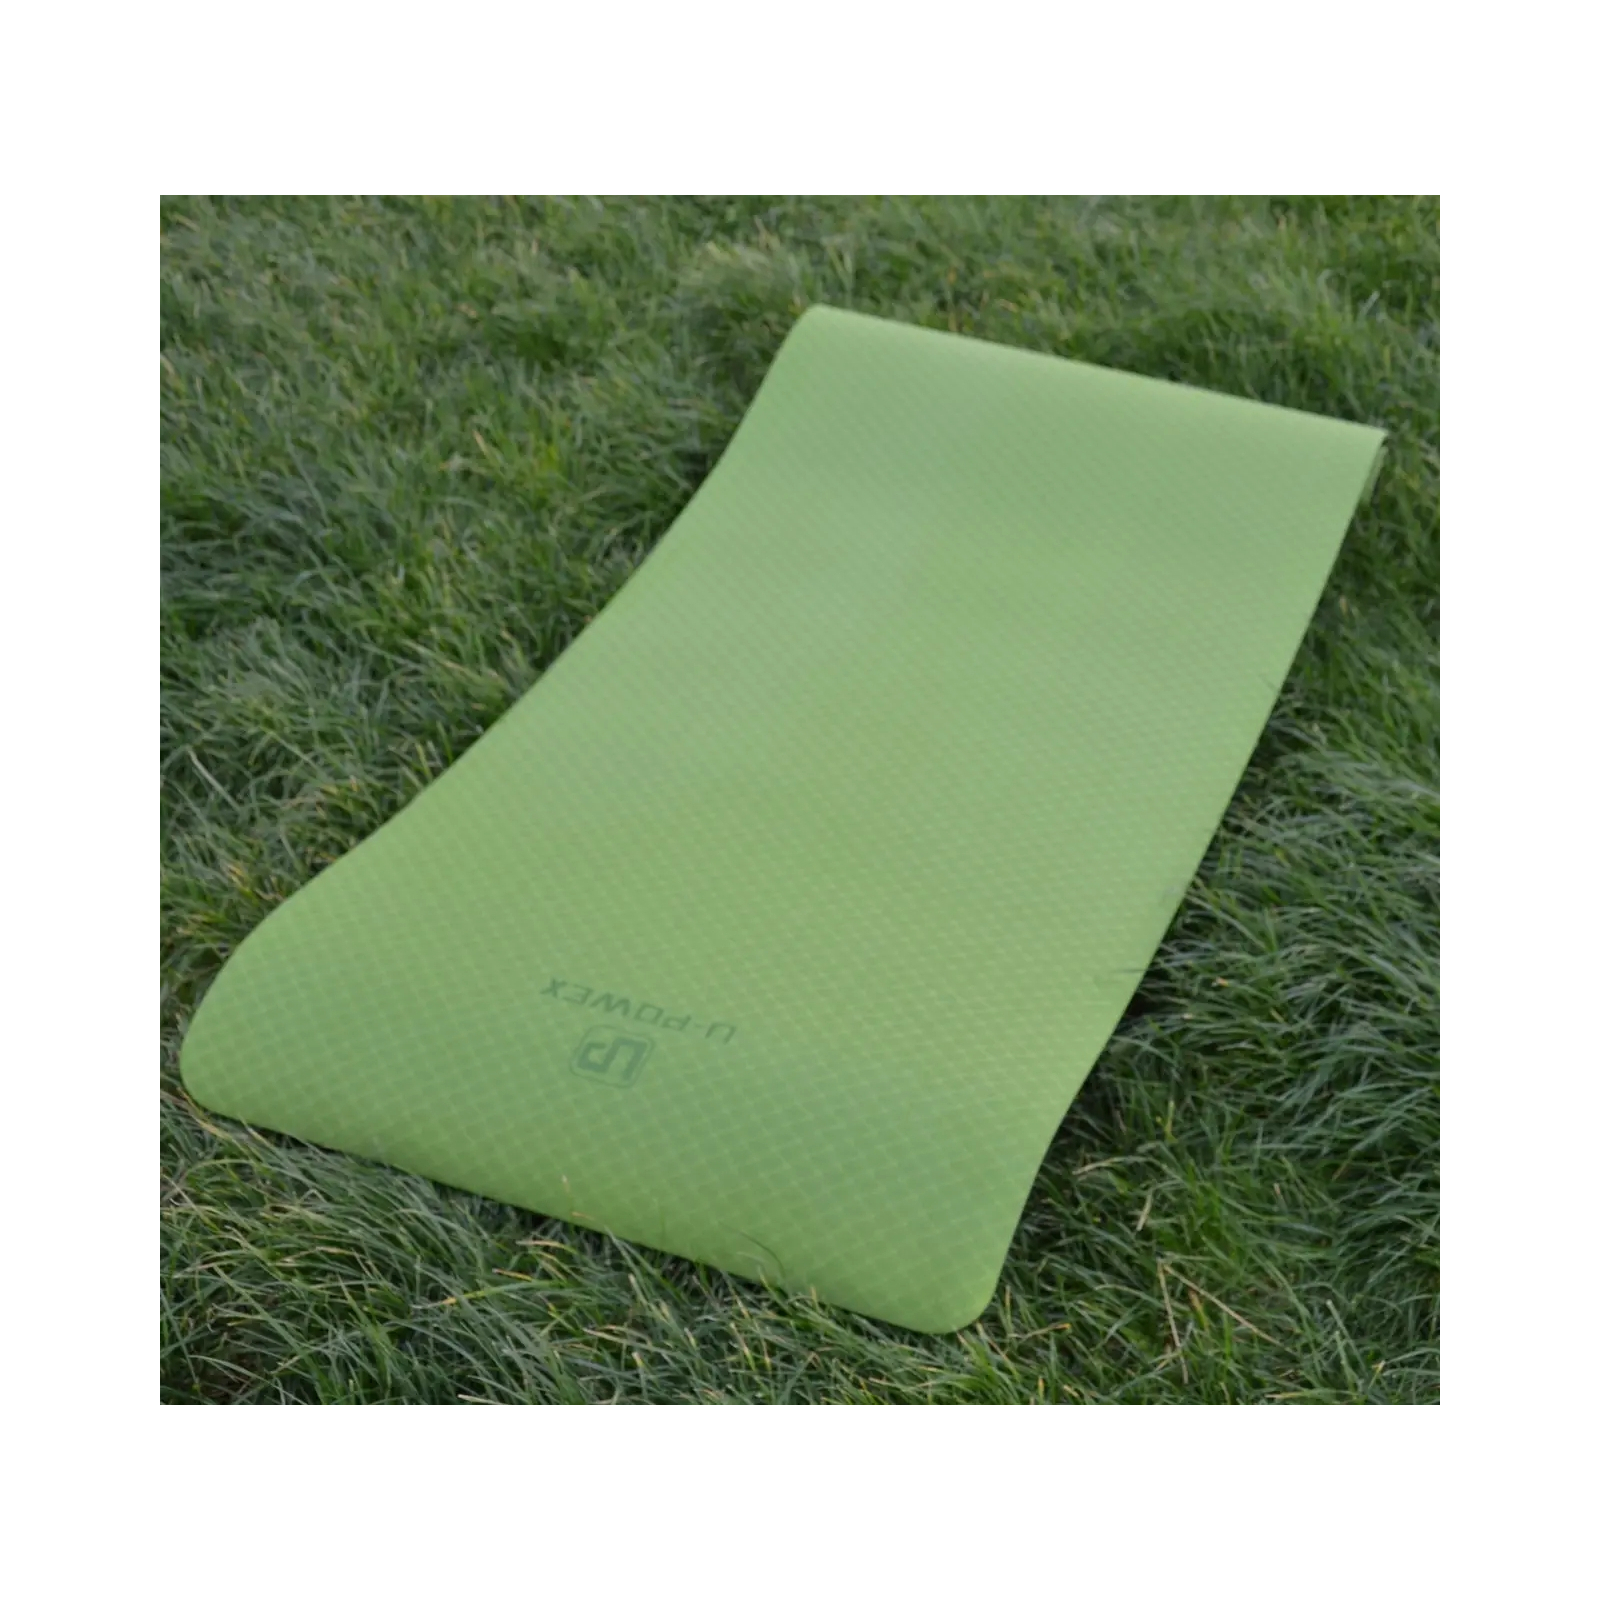 Коврик для йоги U-Powex Yoga mat Orange/Blue 183х61х0.6 (UP_1000_TPE_Or/Blue) изображение 6